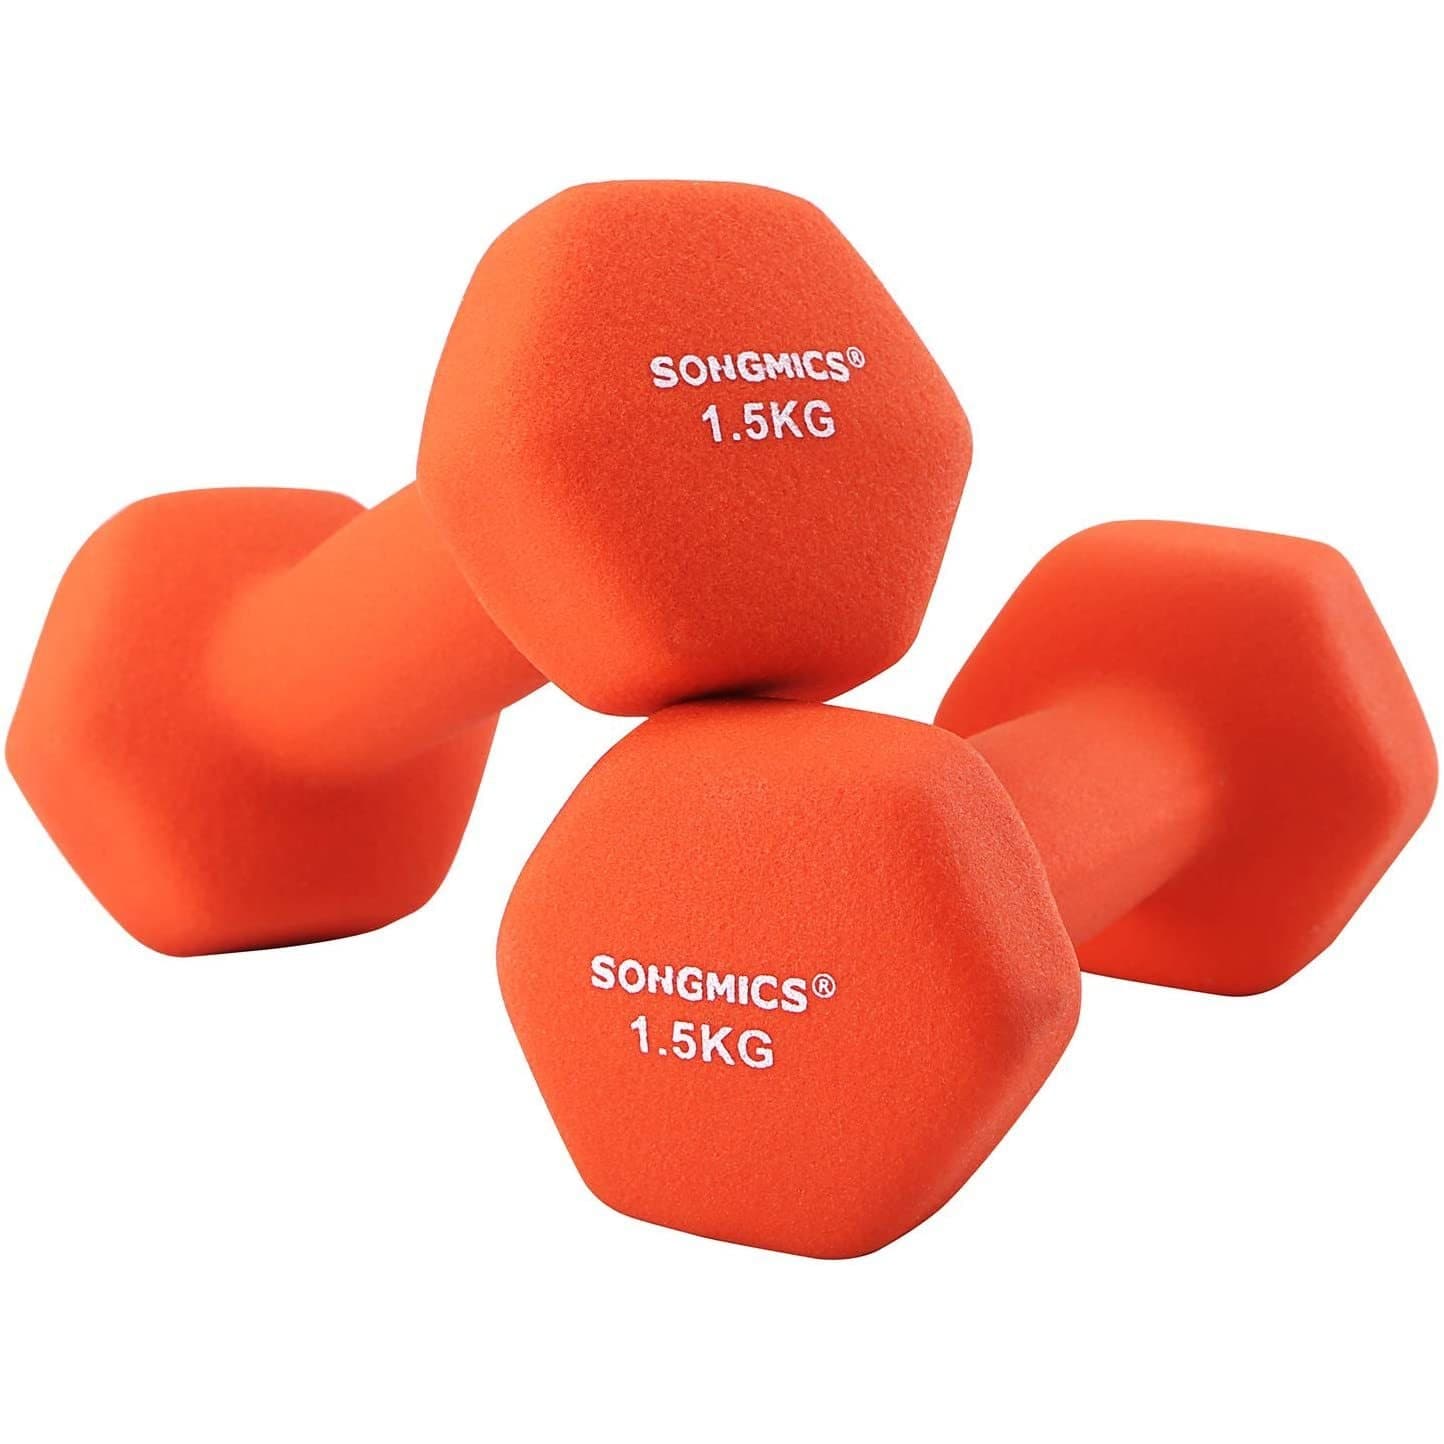 Nancy's Dumbbells Set - 1.5 kg per Dumbbell - Oranje Dumbbells - Gewichten en Halters - 2 Stuks